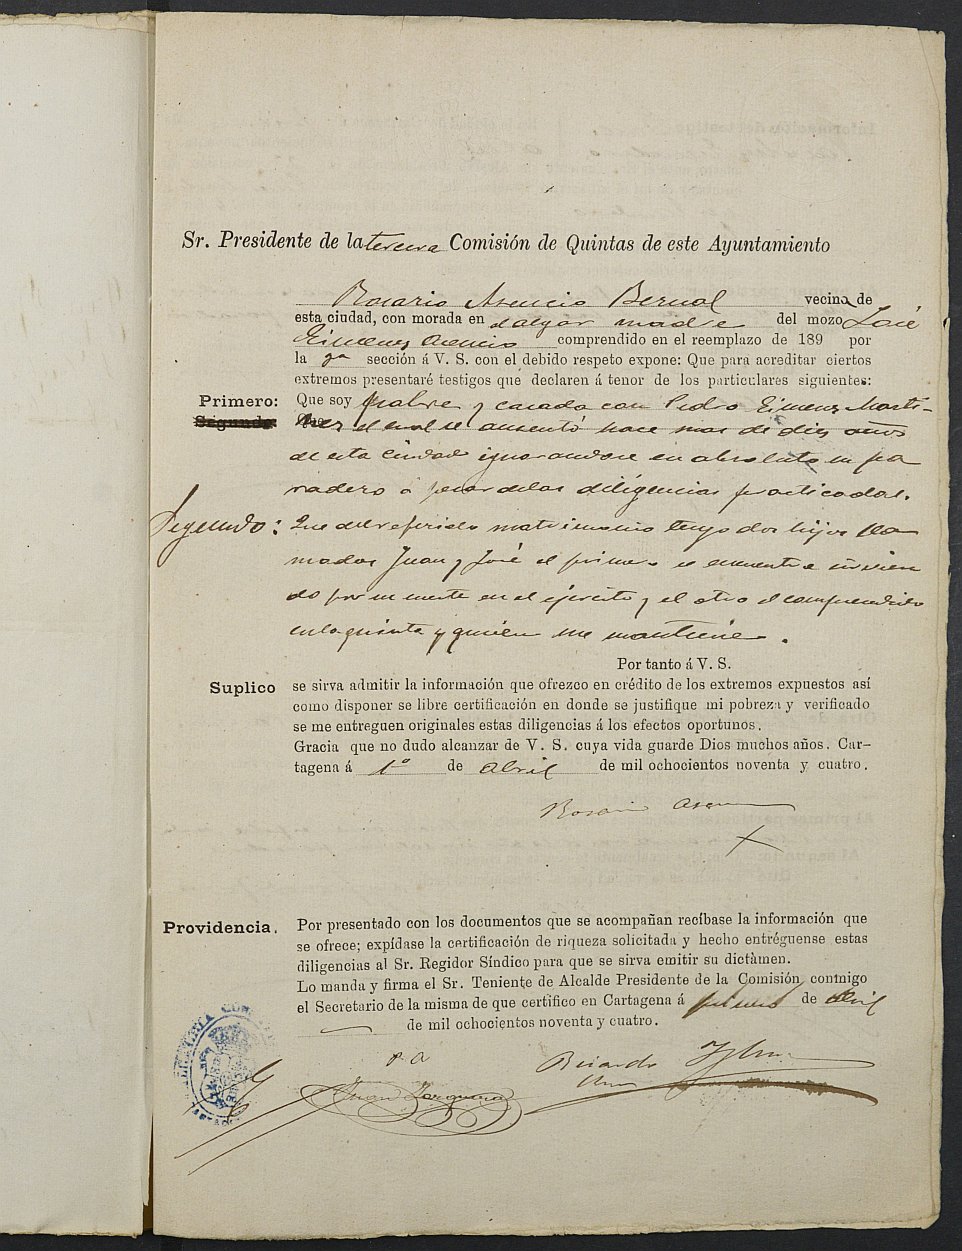 Expediente justificativo de la excepción del servicio militar de José Giménez Asensio, mozo del reemplazo de 1894 de Cartagena.